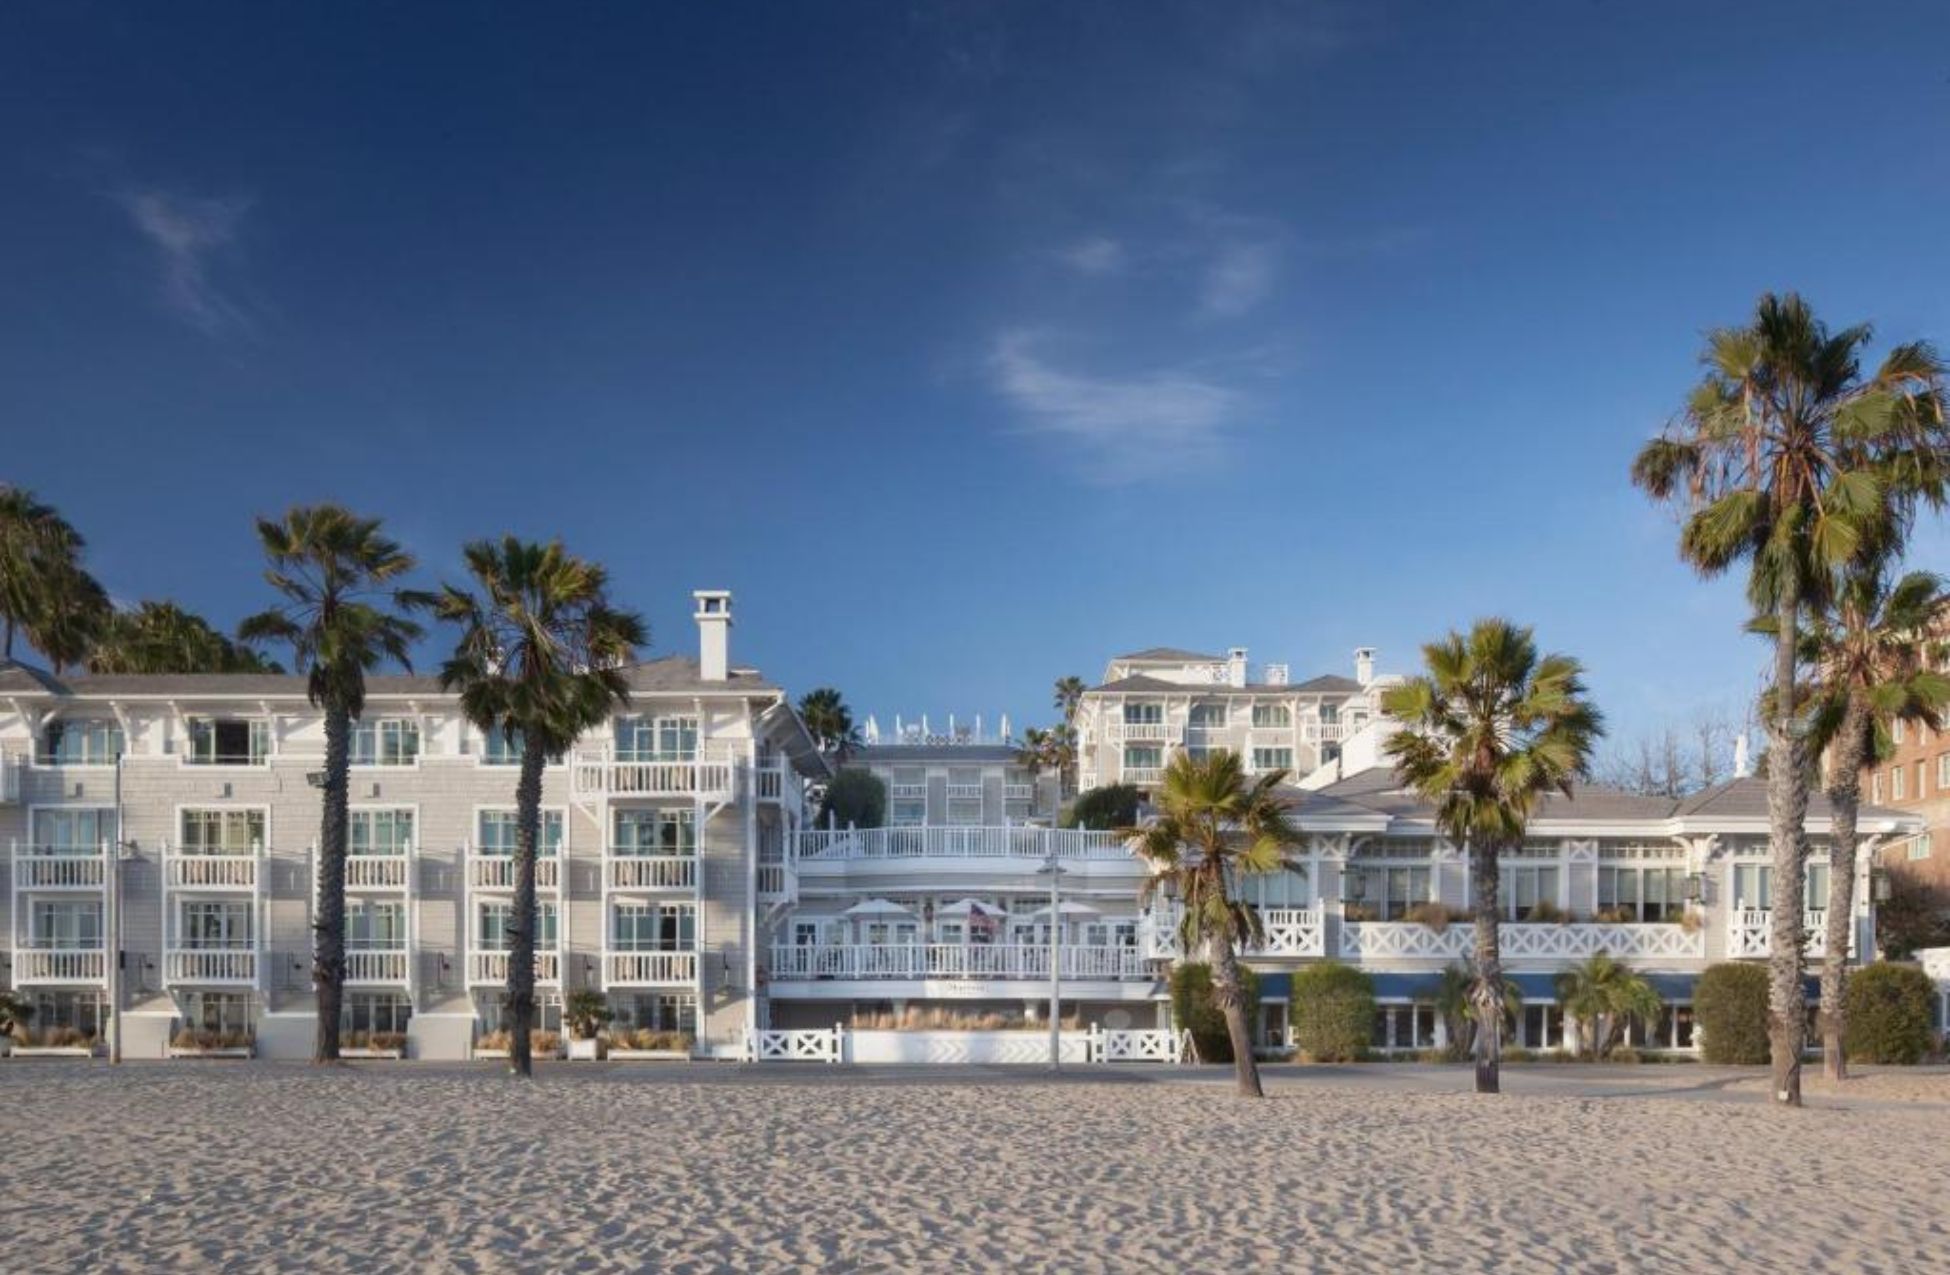 Shutters On The Beach - Best Hotels In Santa Monica